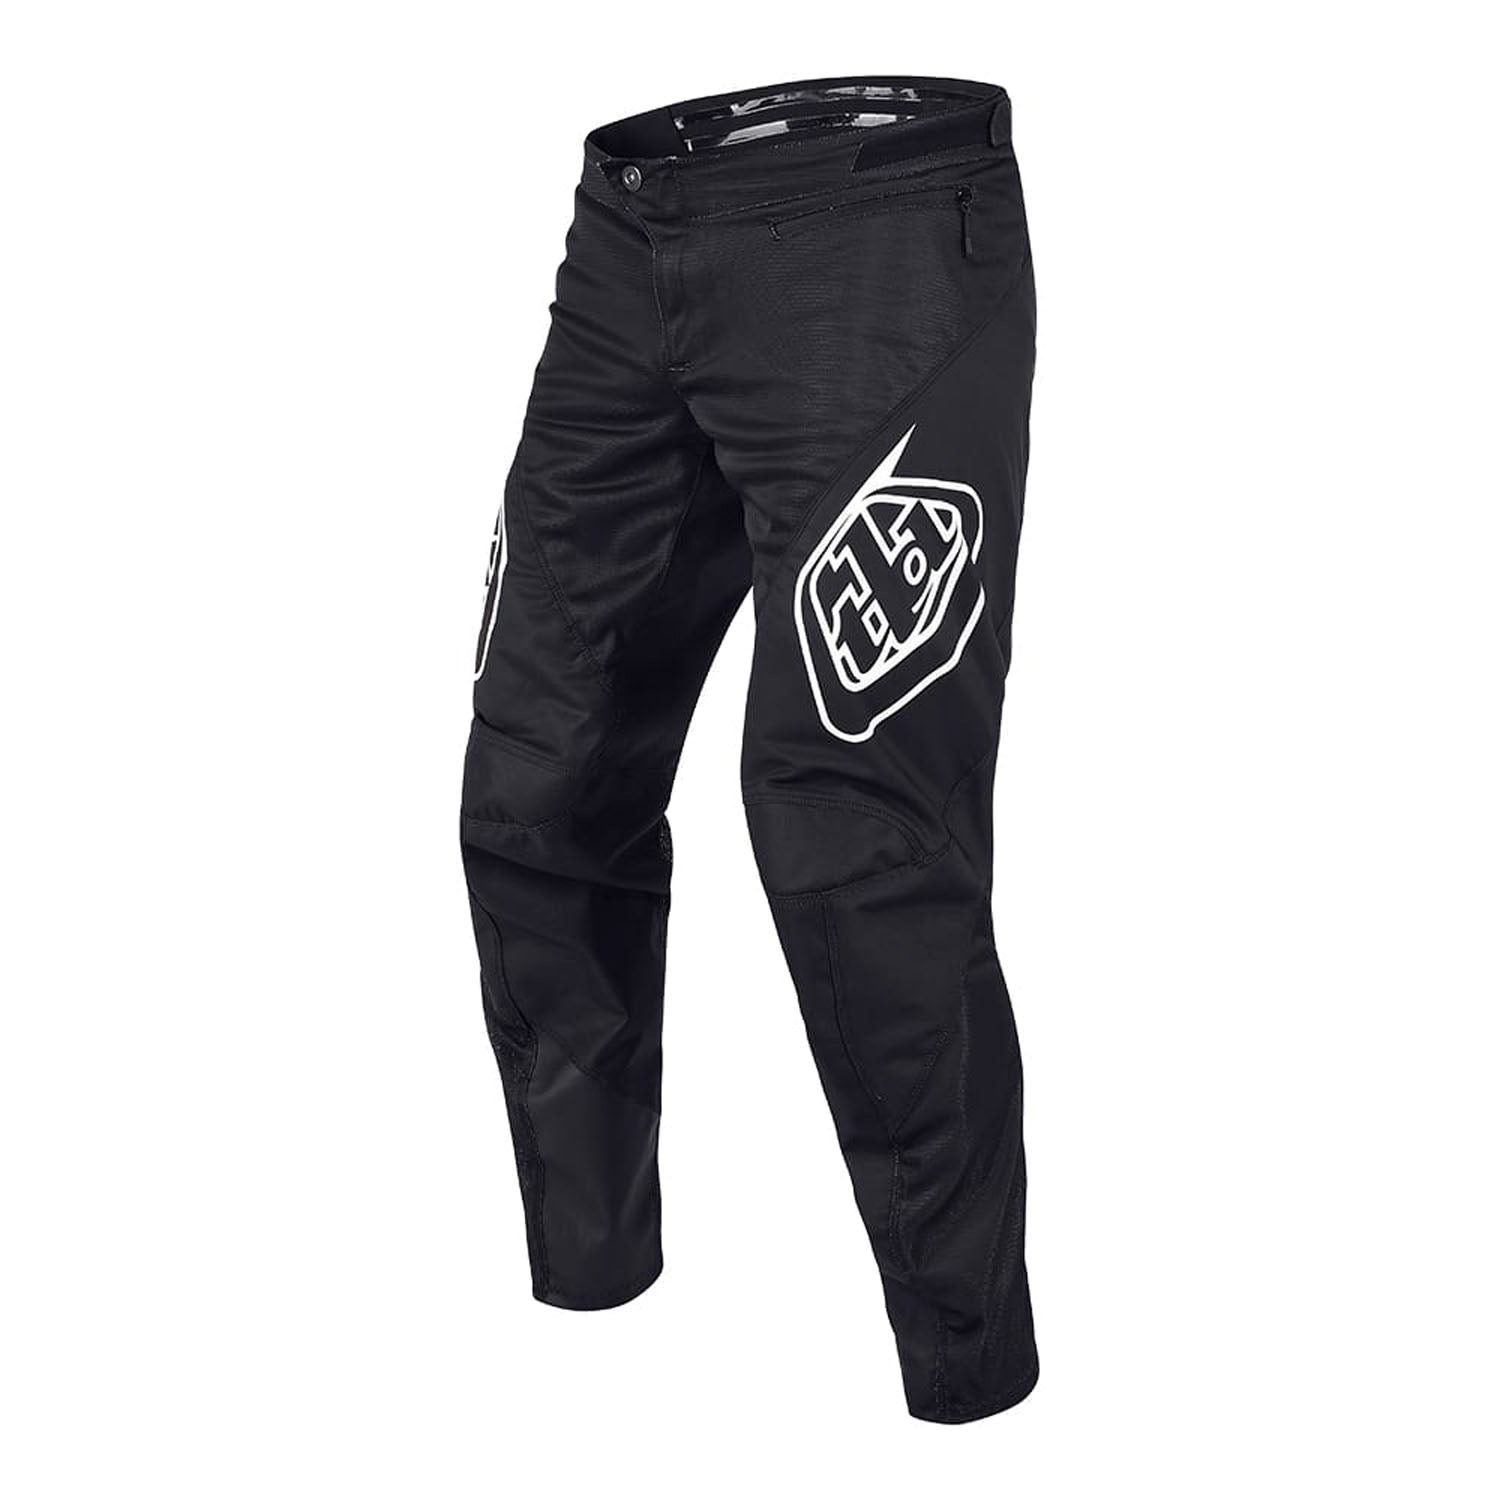 Troy Lee Designs Sprint Pant Solid Black 38 - Troy Lee Designs Bike Pants